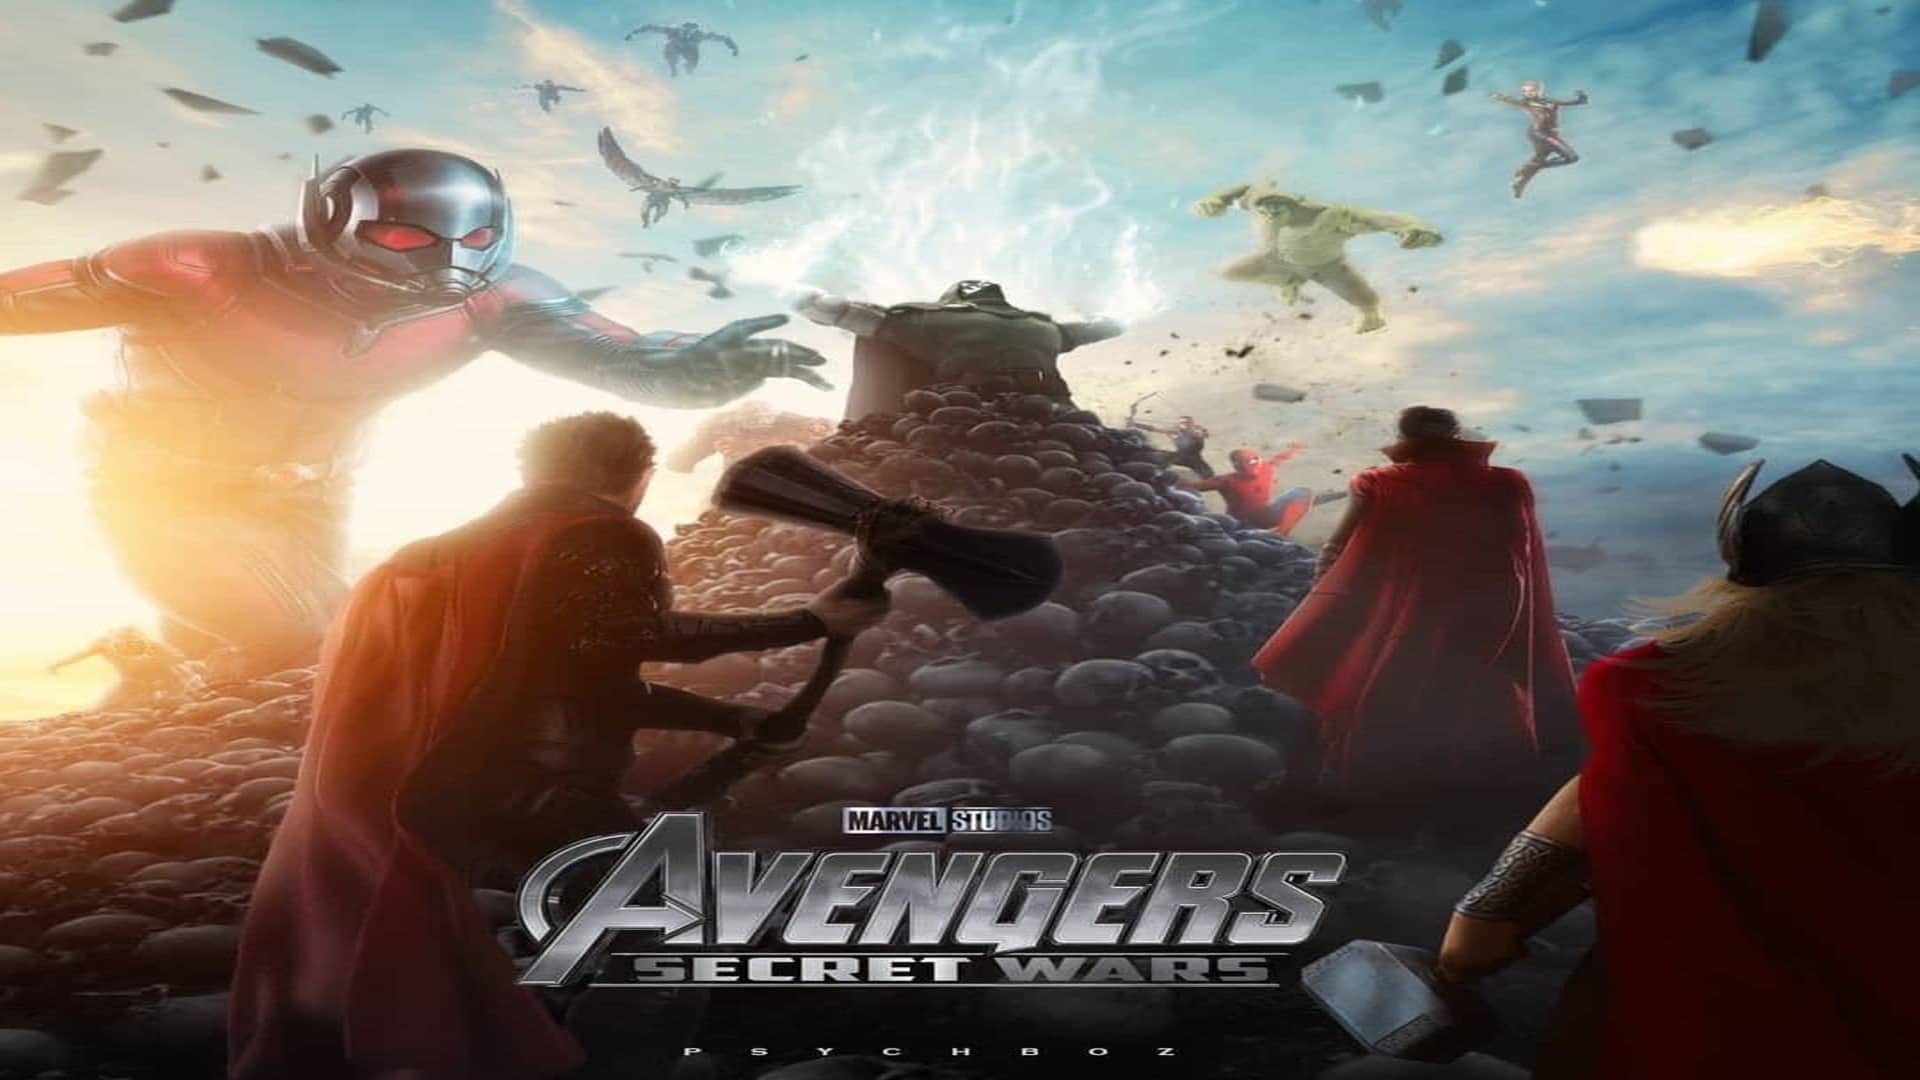 La próxima película de Avengers podría dar paso a la historia Secret Wars, según rumor, GamersRD